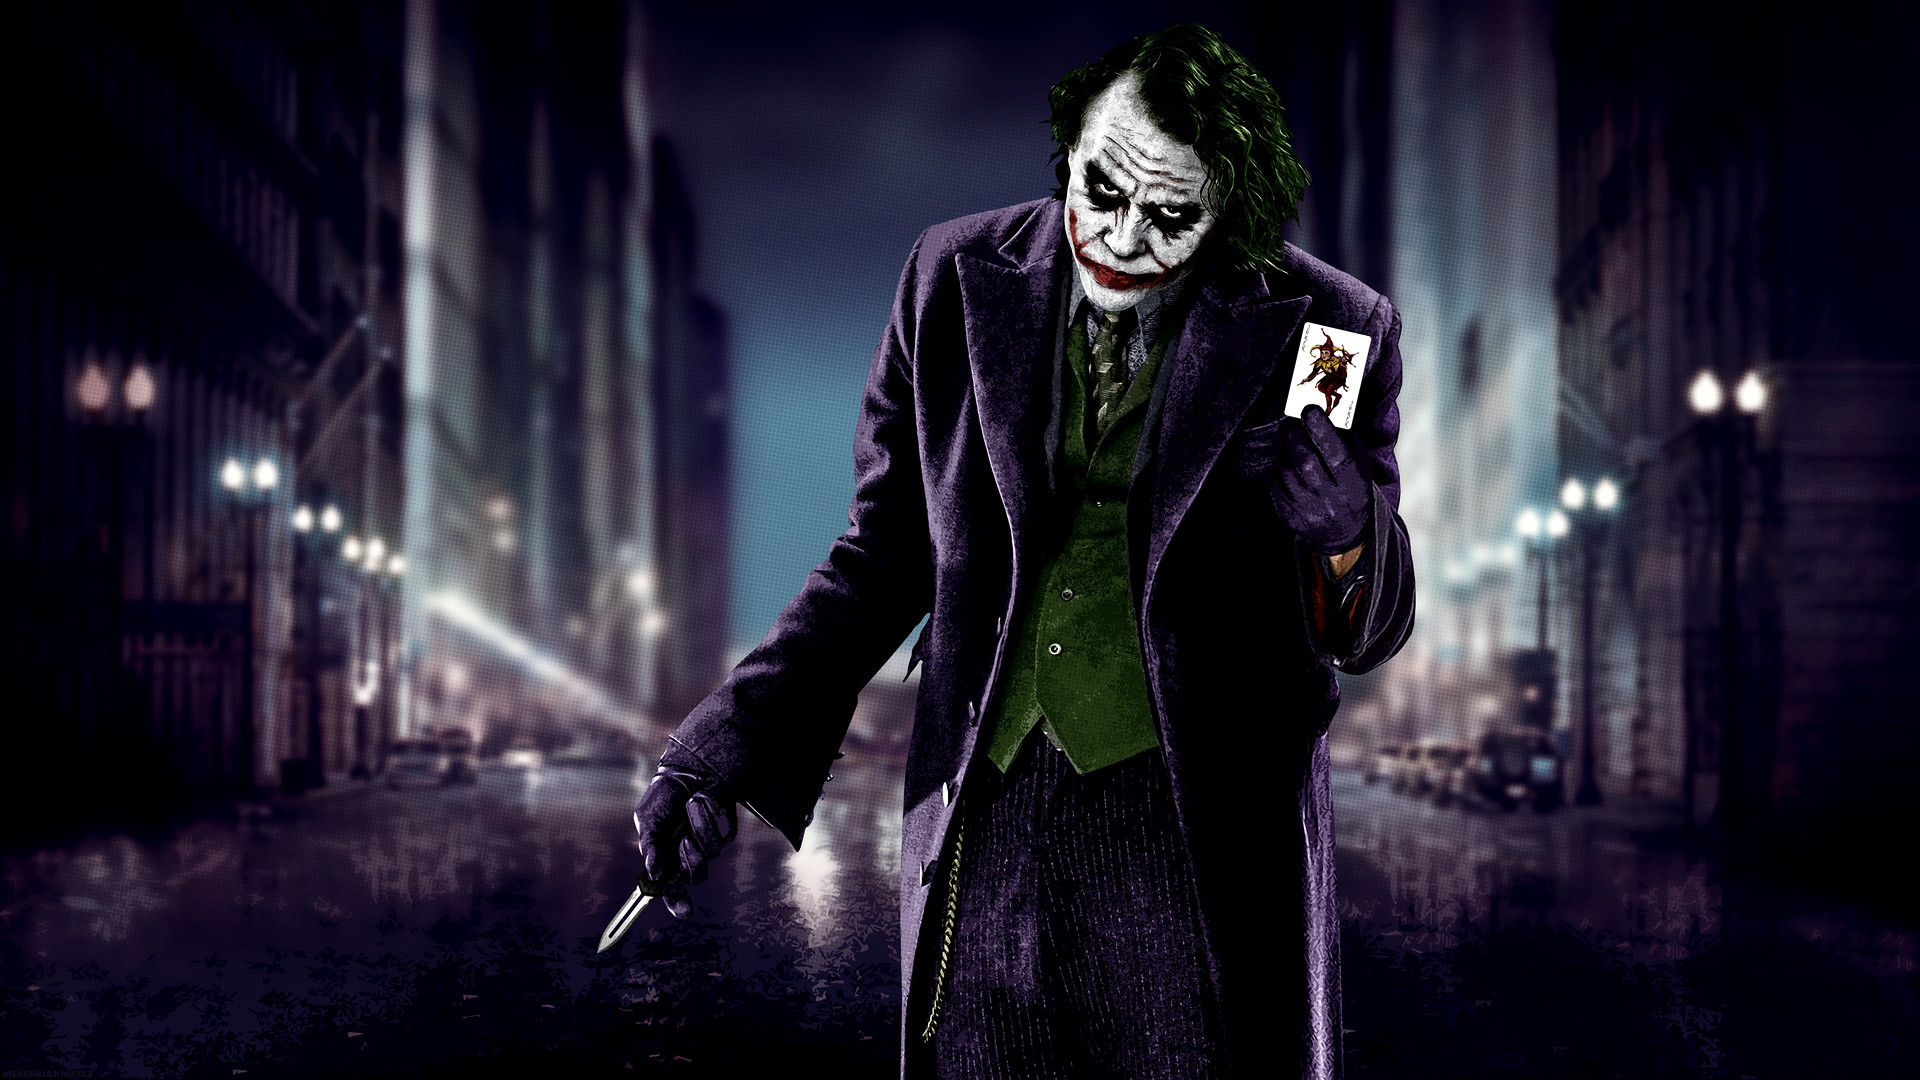 joker hd wallpaper,joker,fictional character,supervillain,darkness,batman